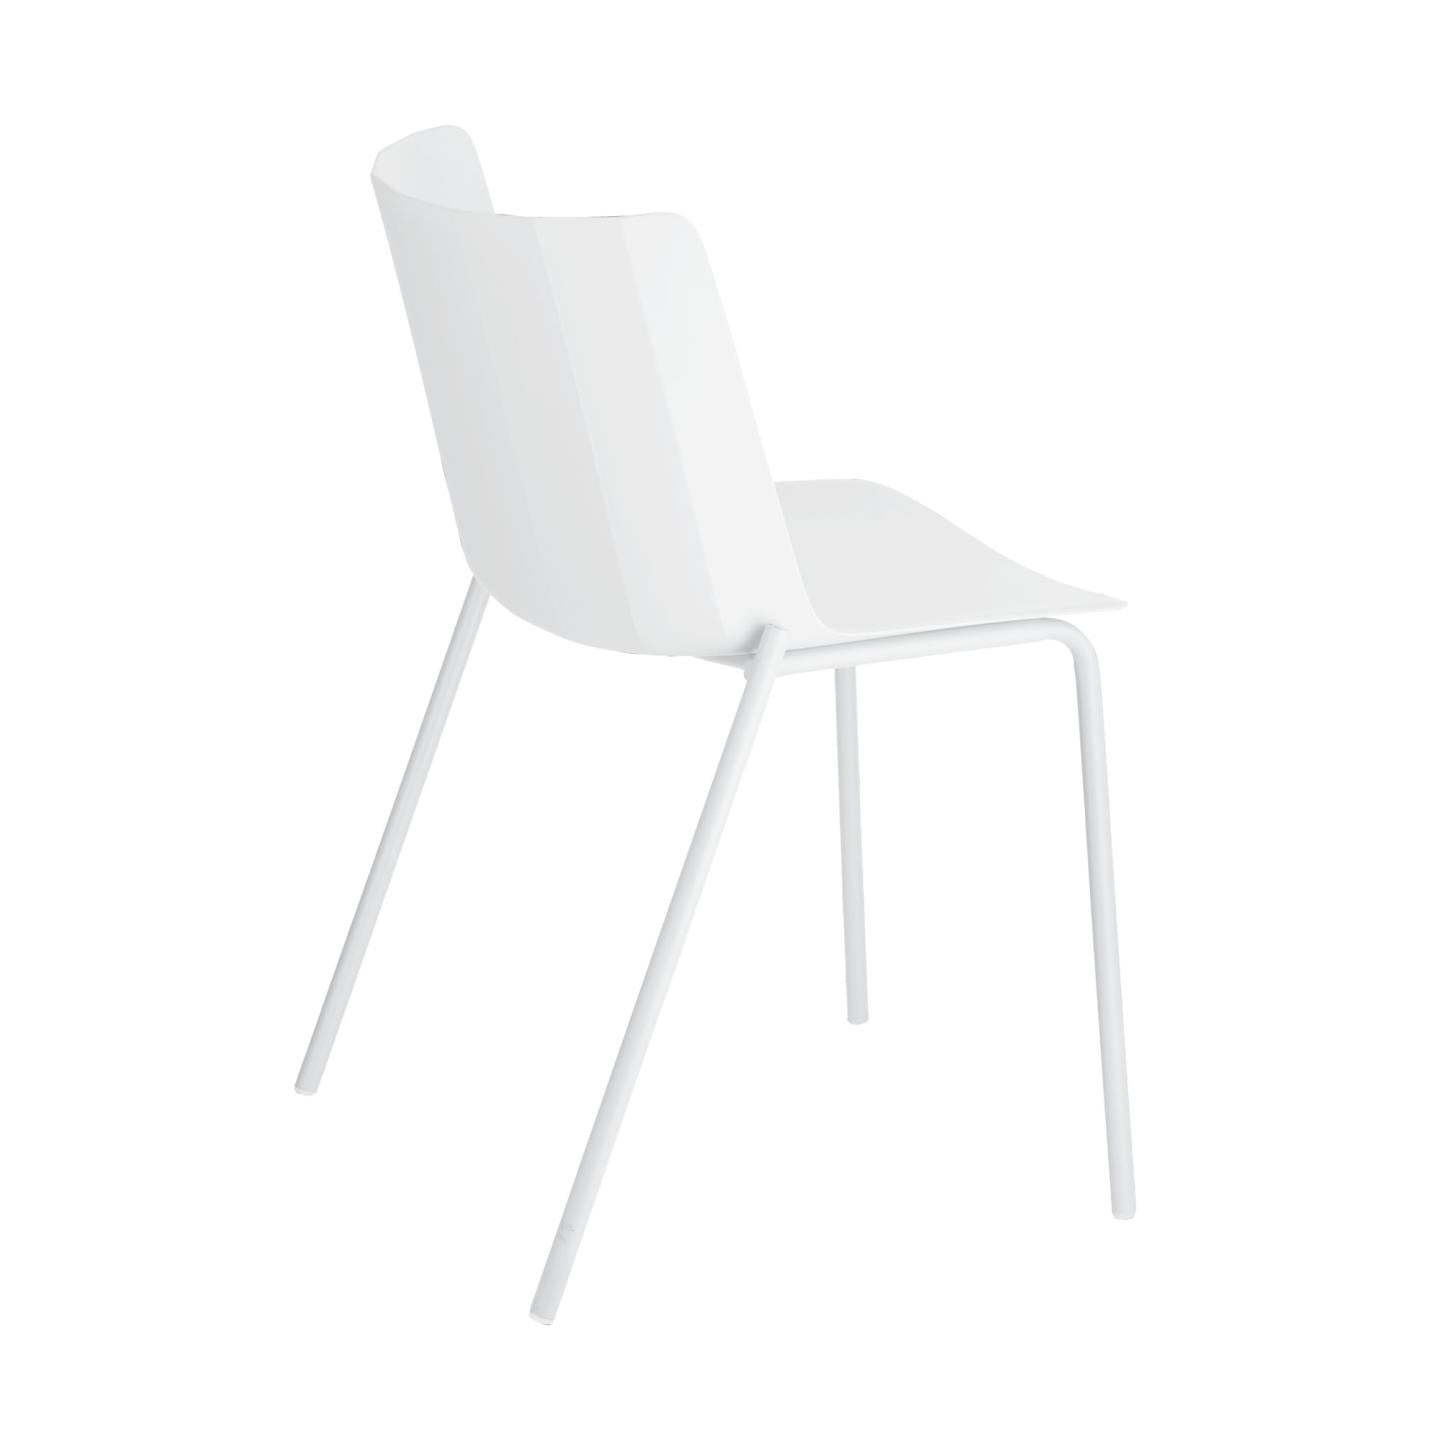 Hannia white chair